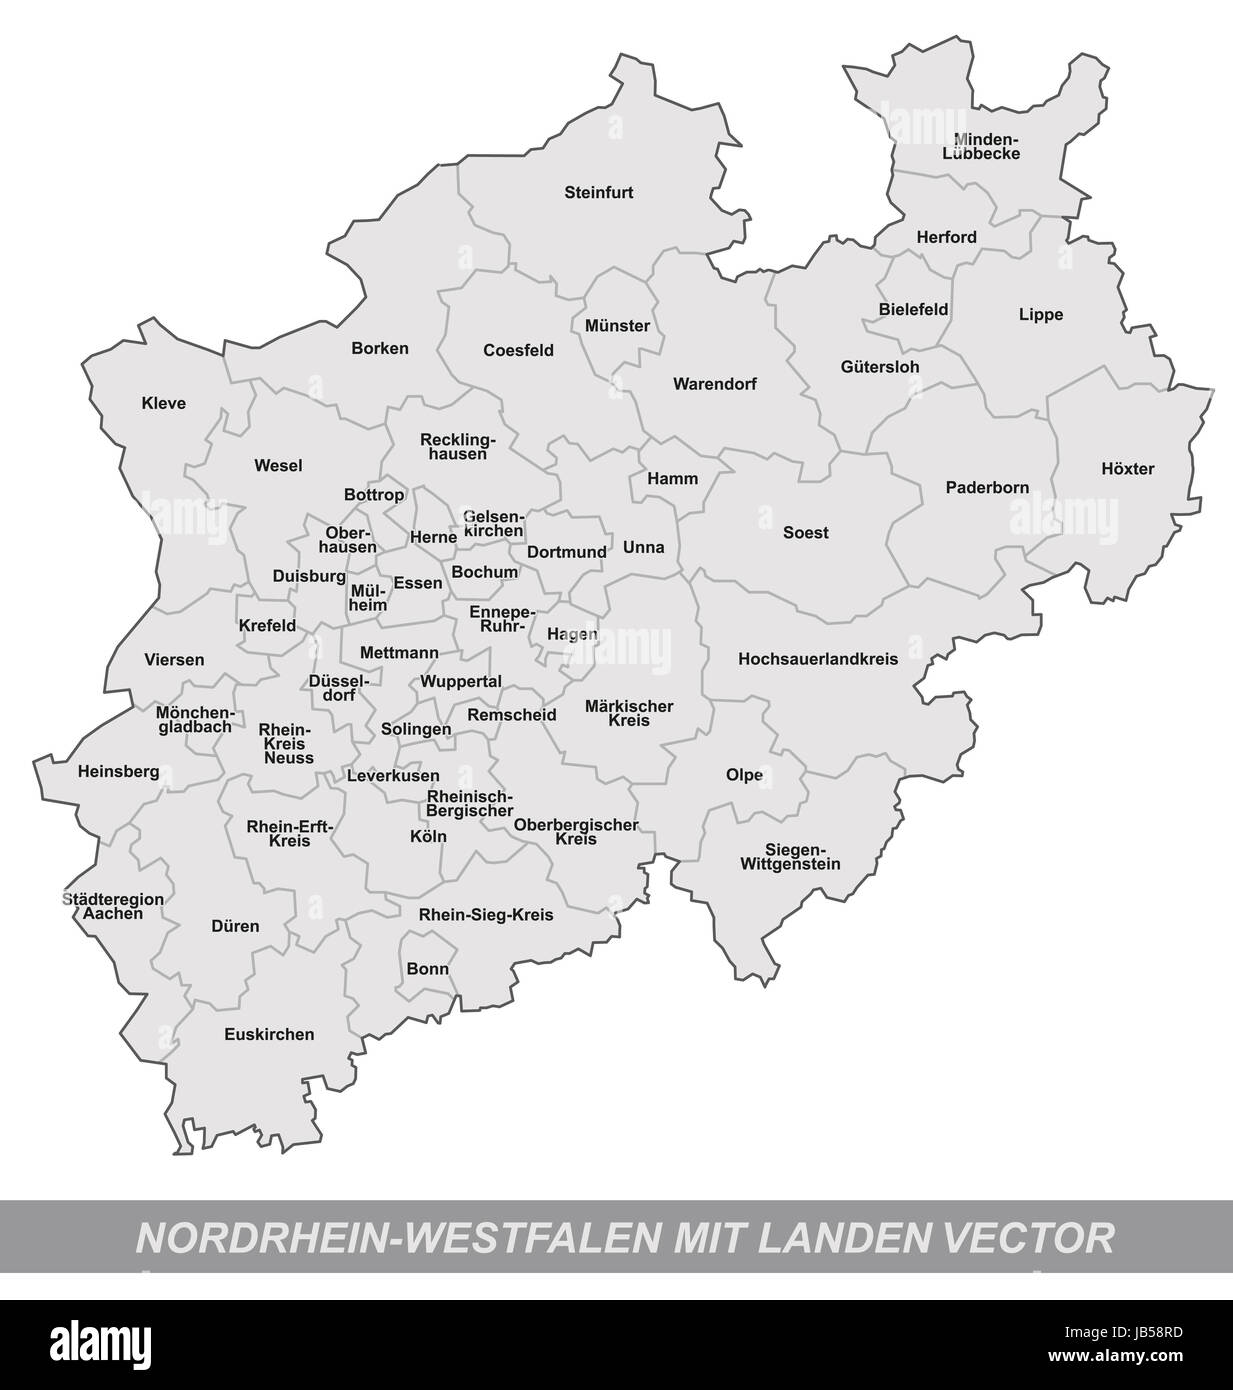 Nordrhein-Westfalen in Deutschland als Inselkarte mit Grenzen in Grau. Durch die ansprechende Gestaltung fügt sich die Karte perfekt in Ihr Vorhaben ein. Stock Photo